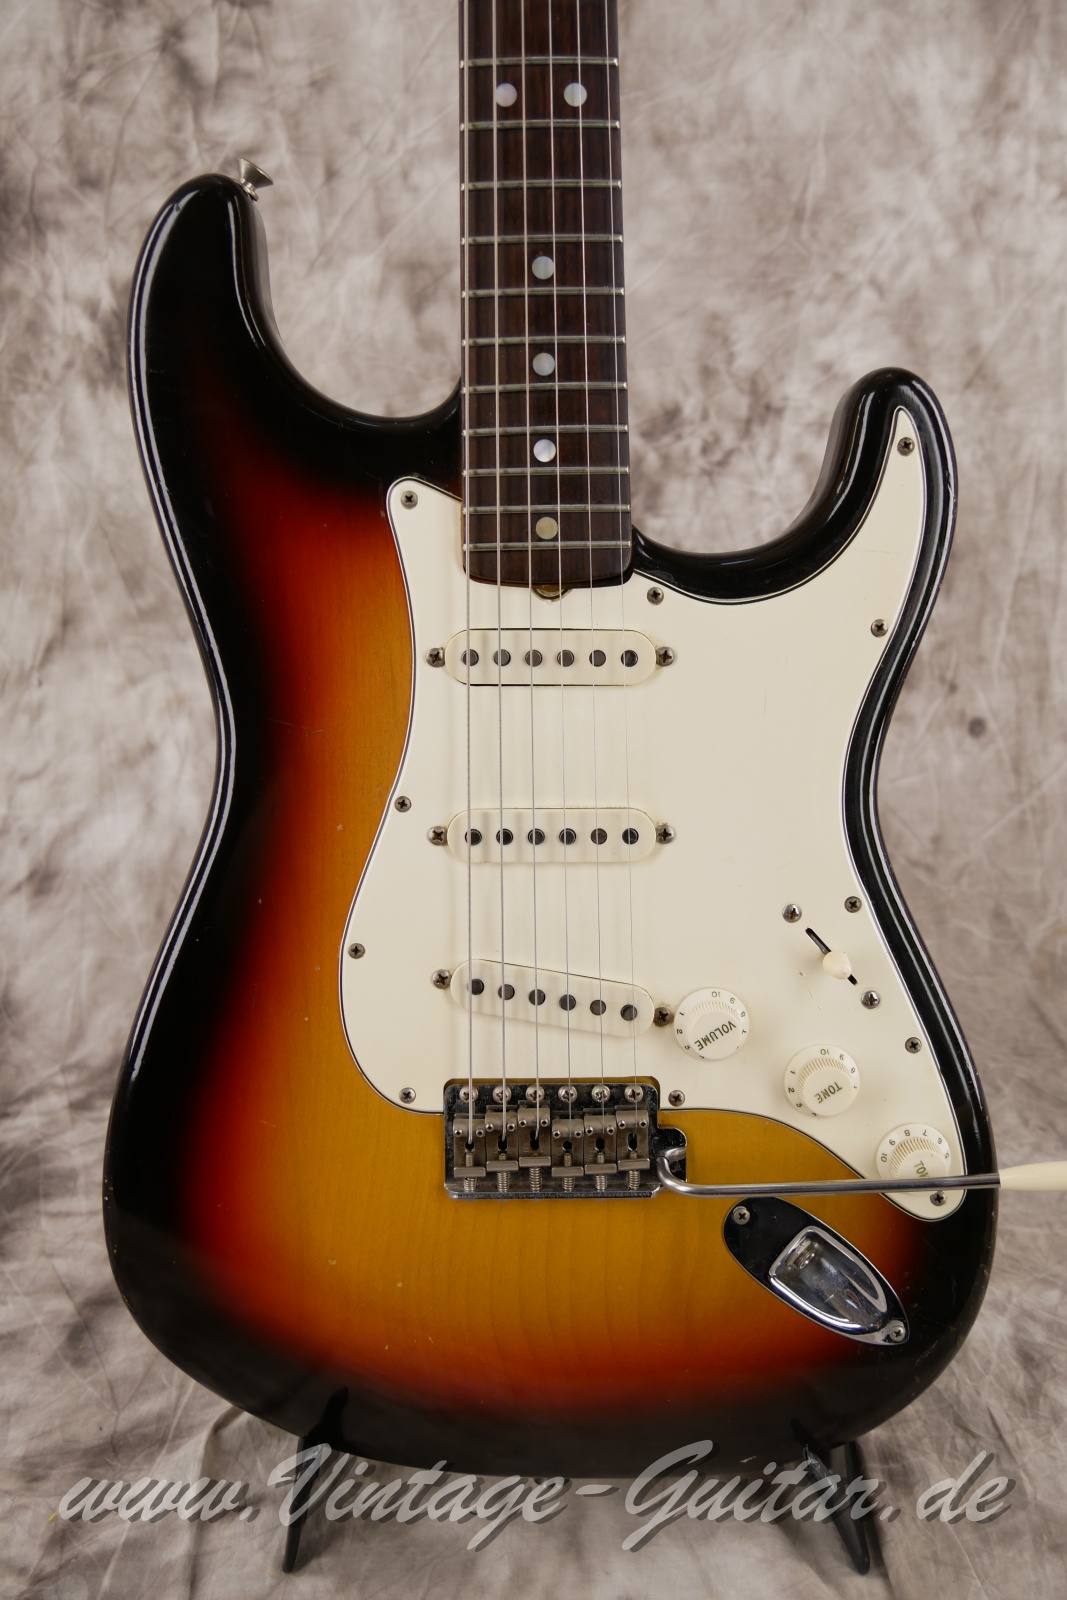 Fender_Stratocaster_1969_sunburst_USA-007.JPG